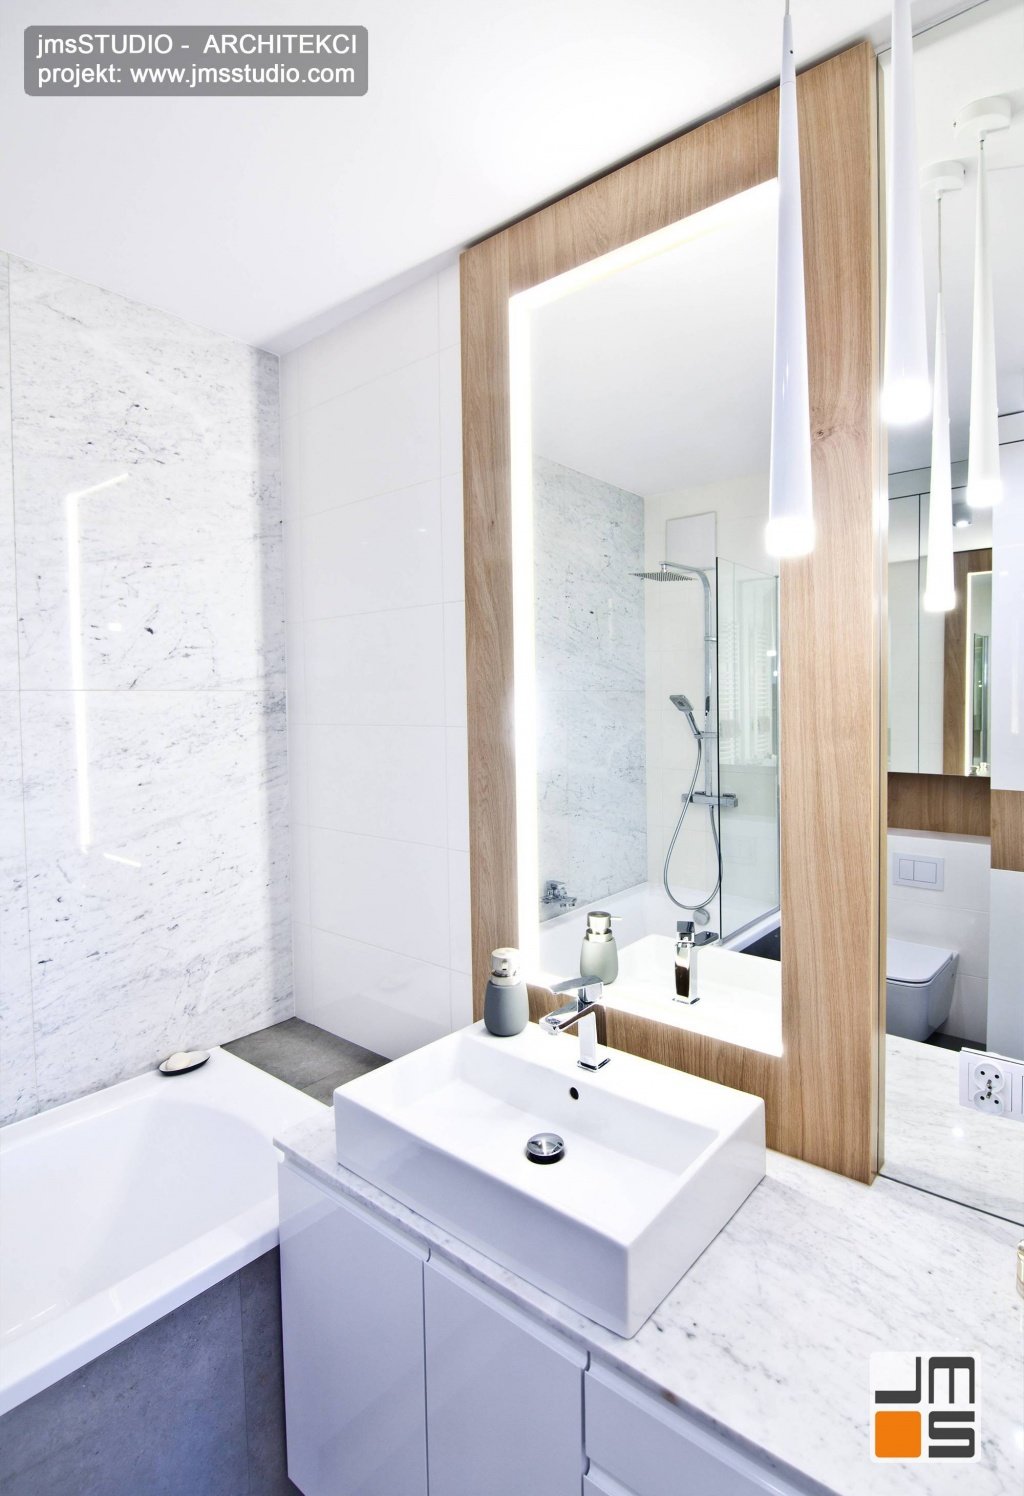 duże lustro w łazience w drewniana rama to elegancki pomysł na dekorację małej łazienki w bloku